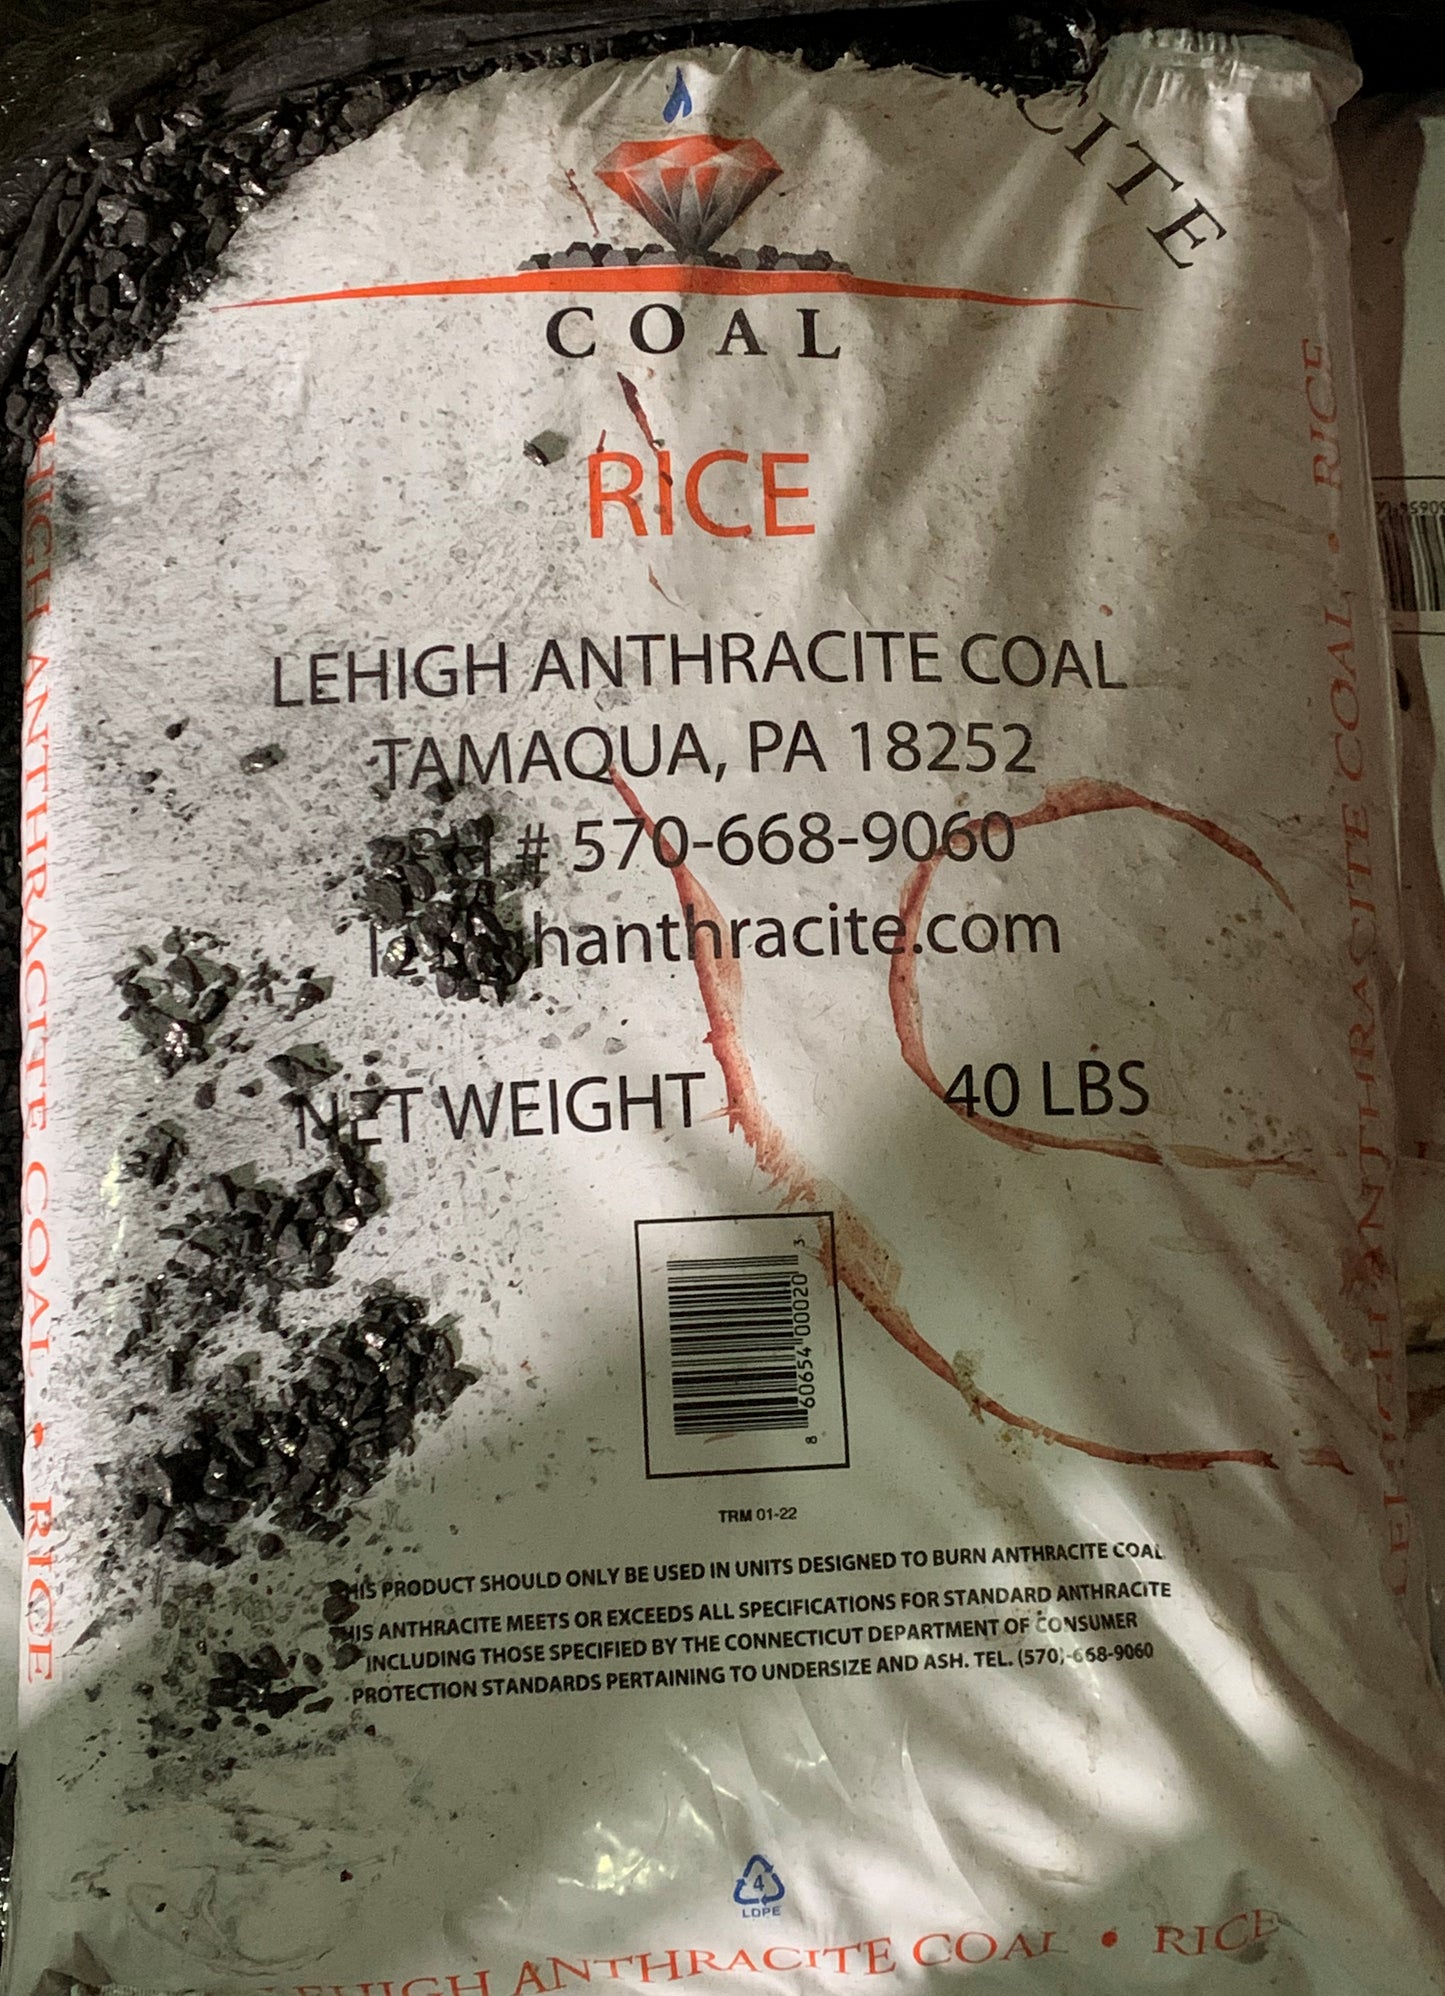 Bagged Coal